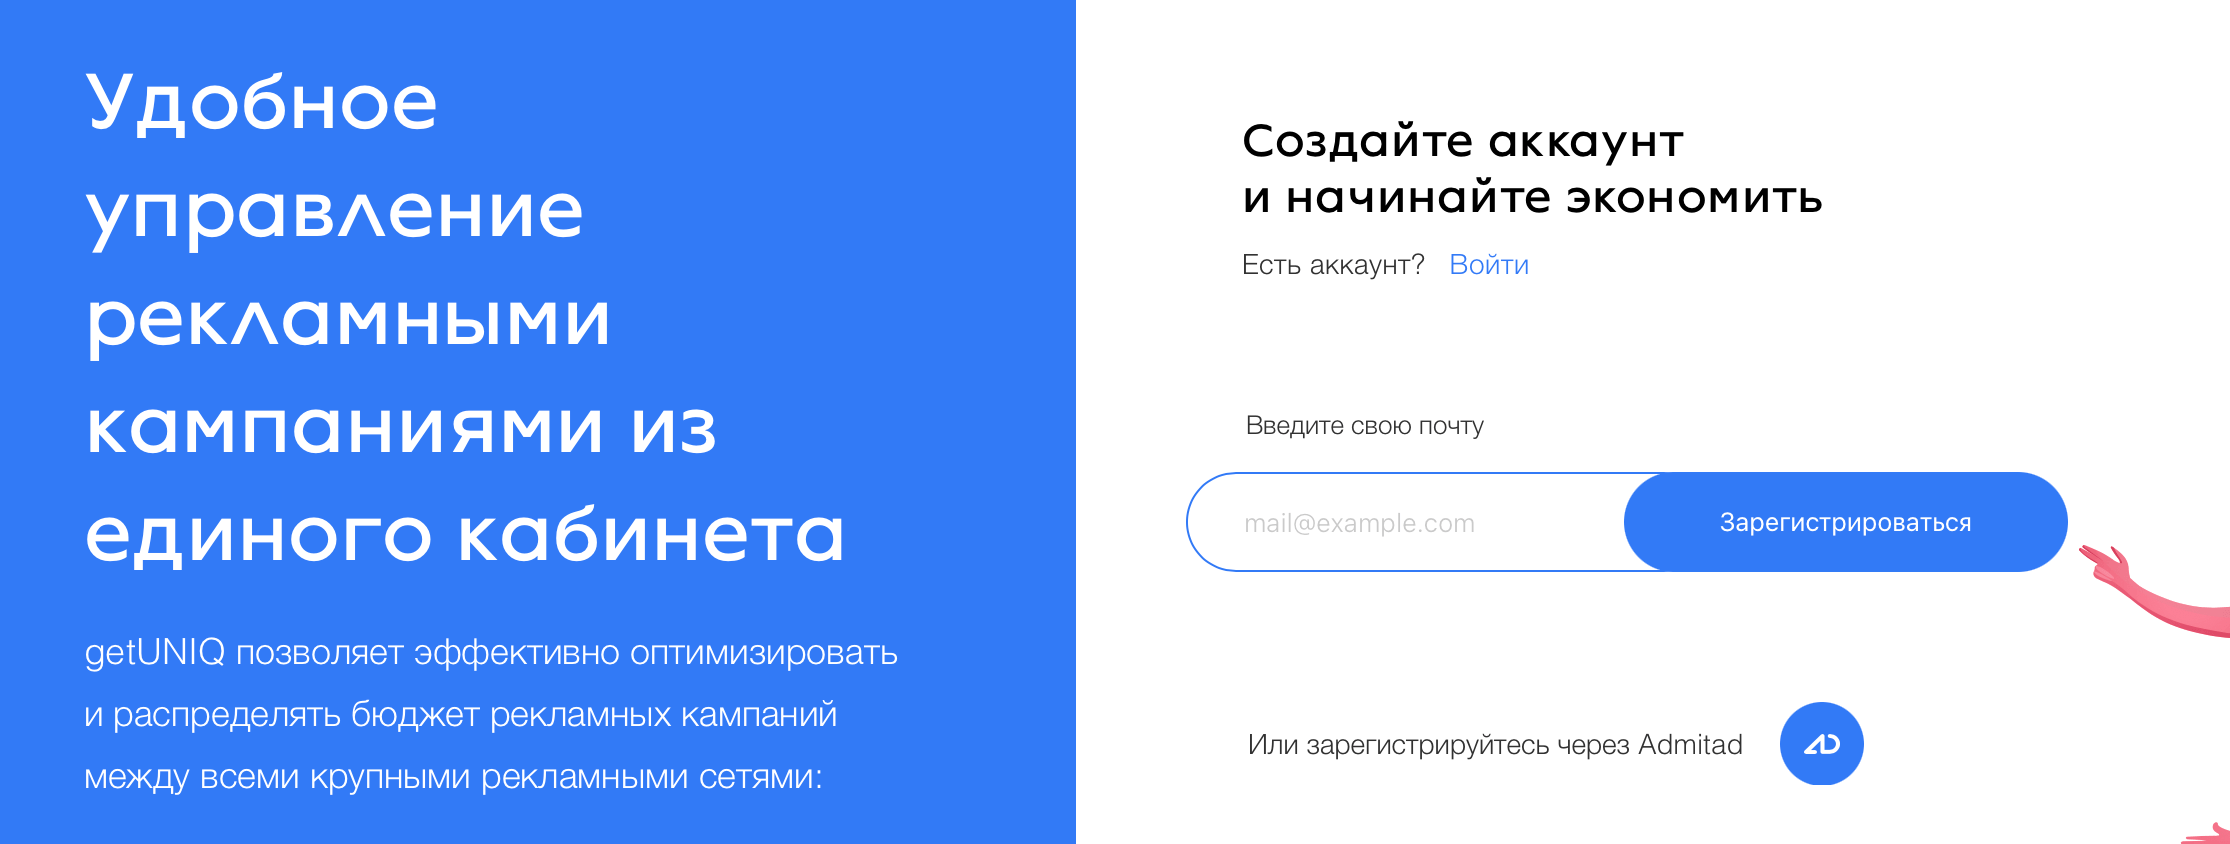 Сайт GetUniq и Яндекс